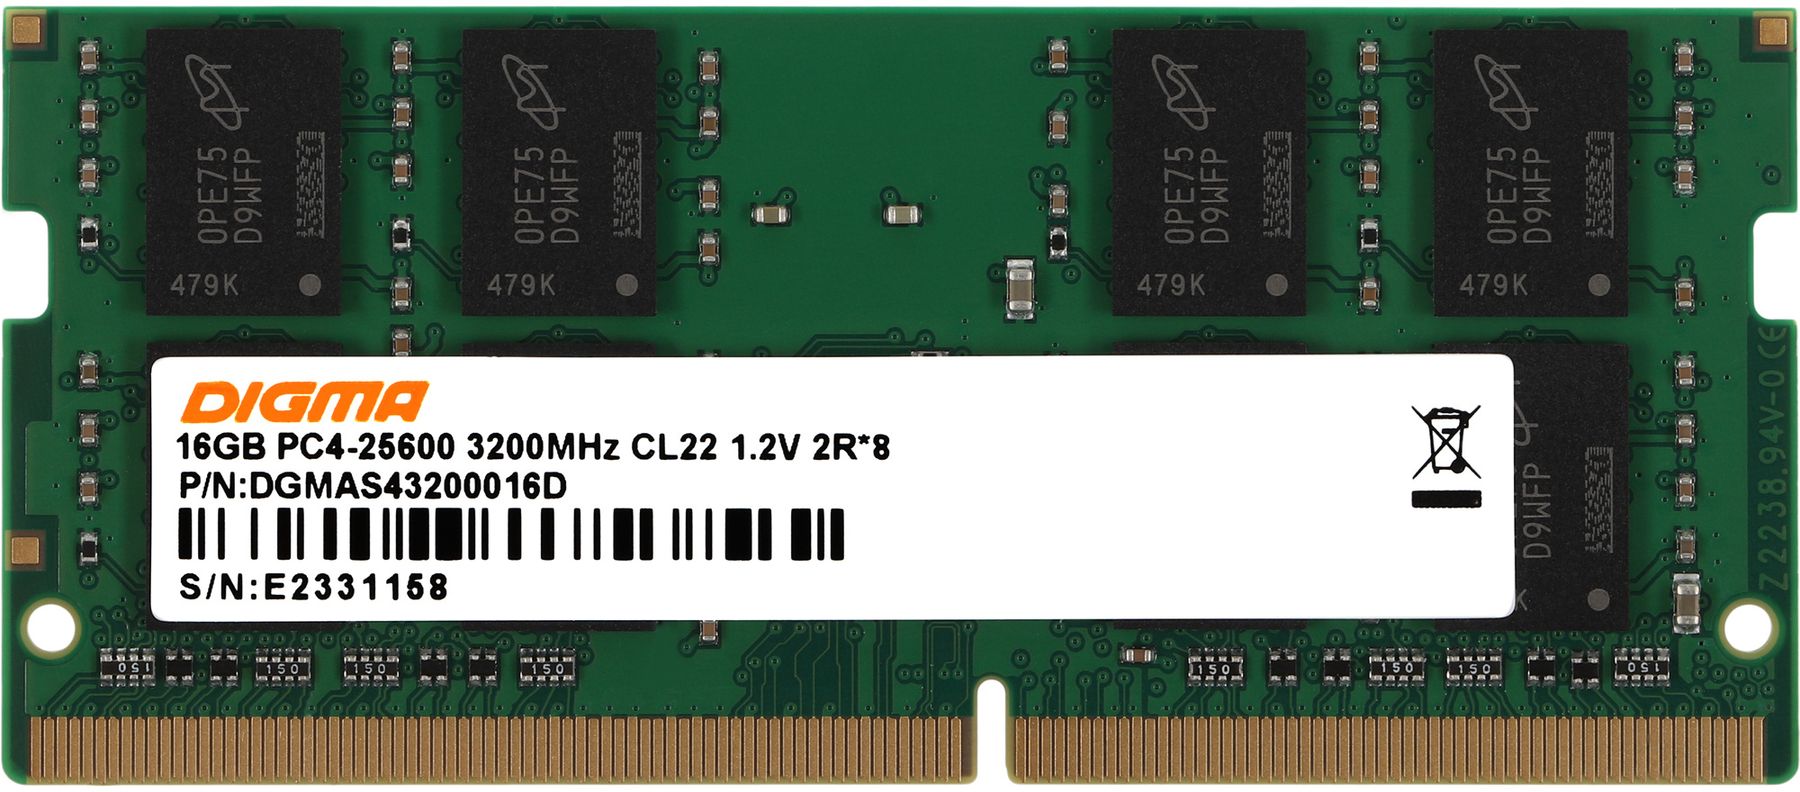 Оперативная память DDR4 Digma 16Gb 3200MHz SO-DIMM (DGMAS43200016D) память оперативная innodisk 16gb ddr4 2400 so dimm m4s0 ags1oisj cc